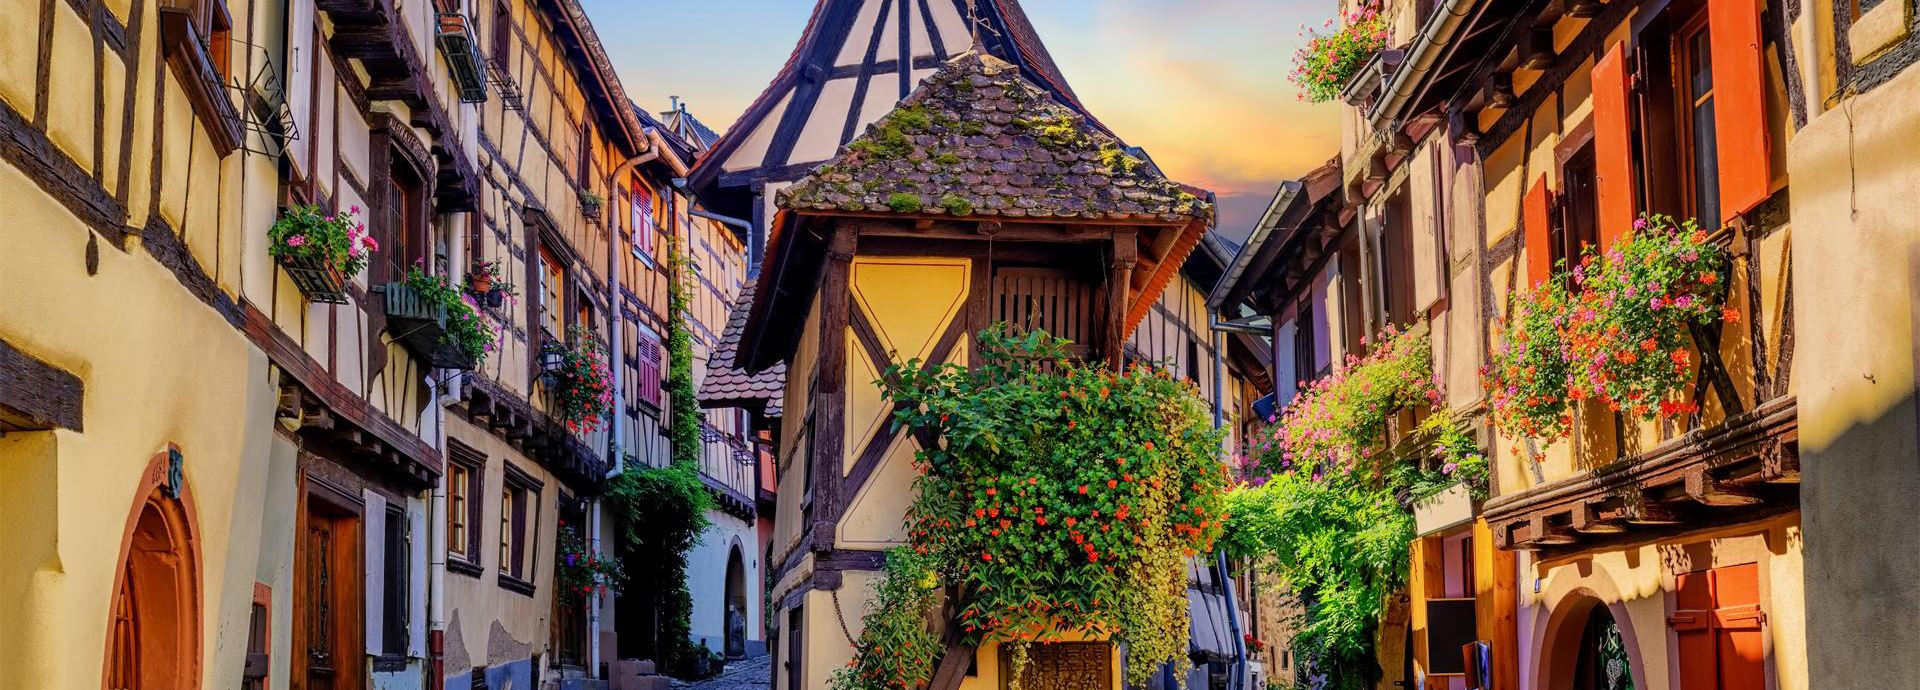 Eguisheim, wine village of Alsace